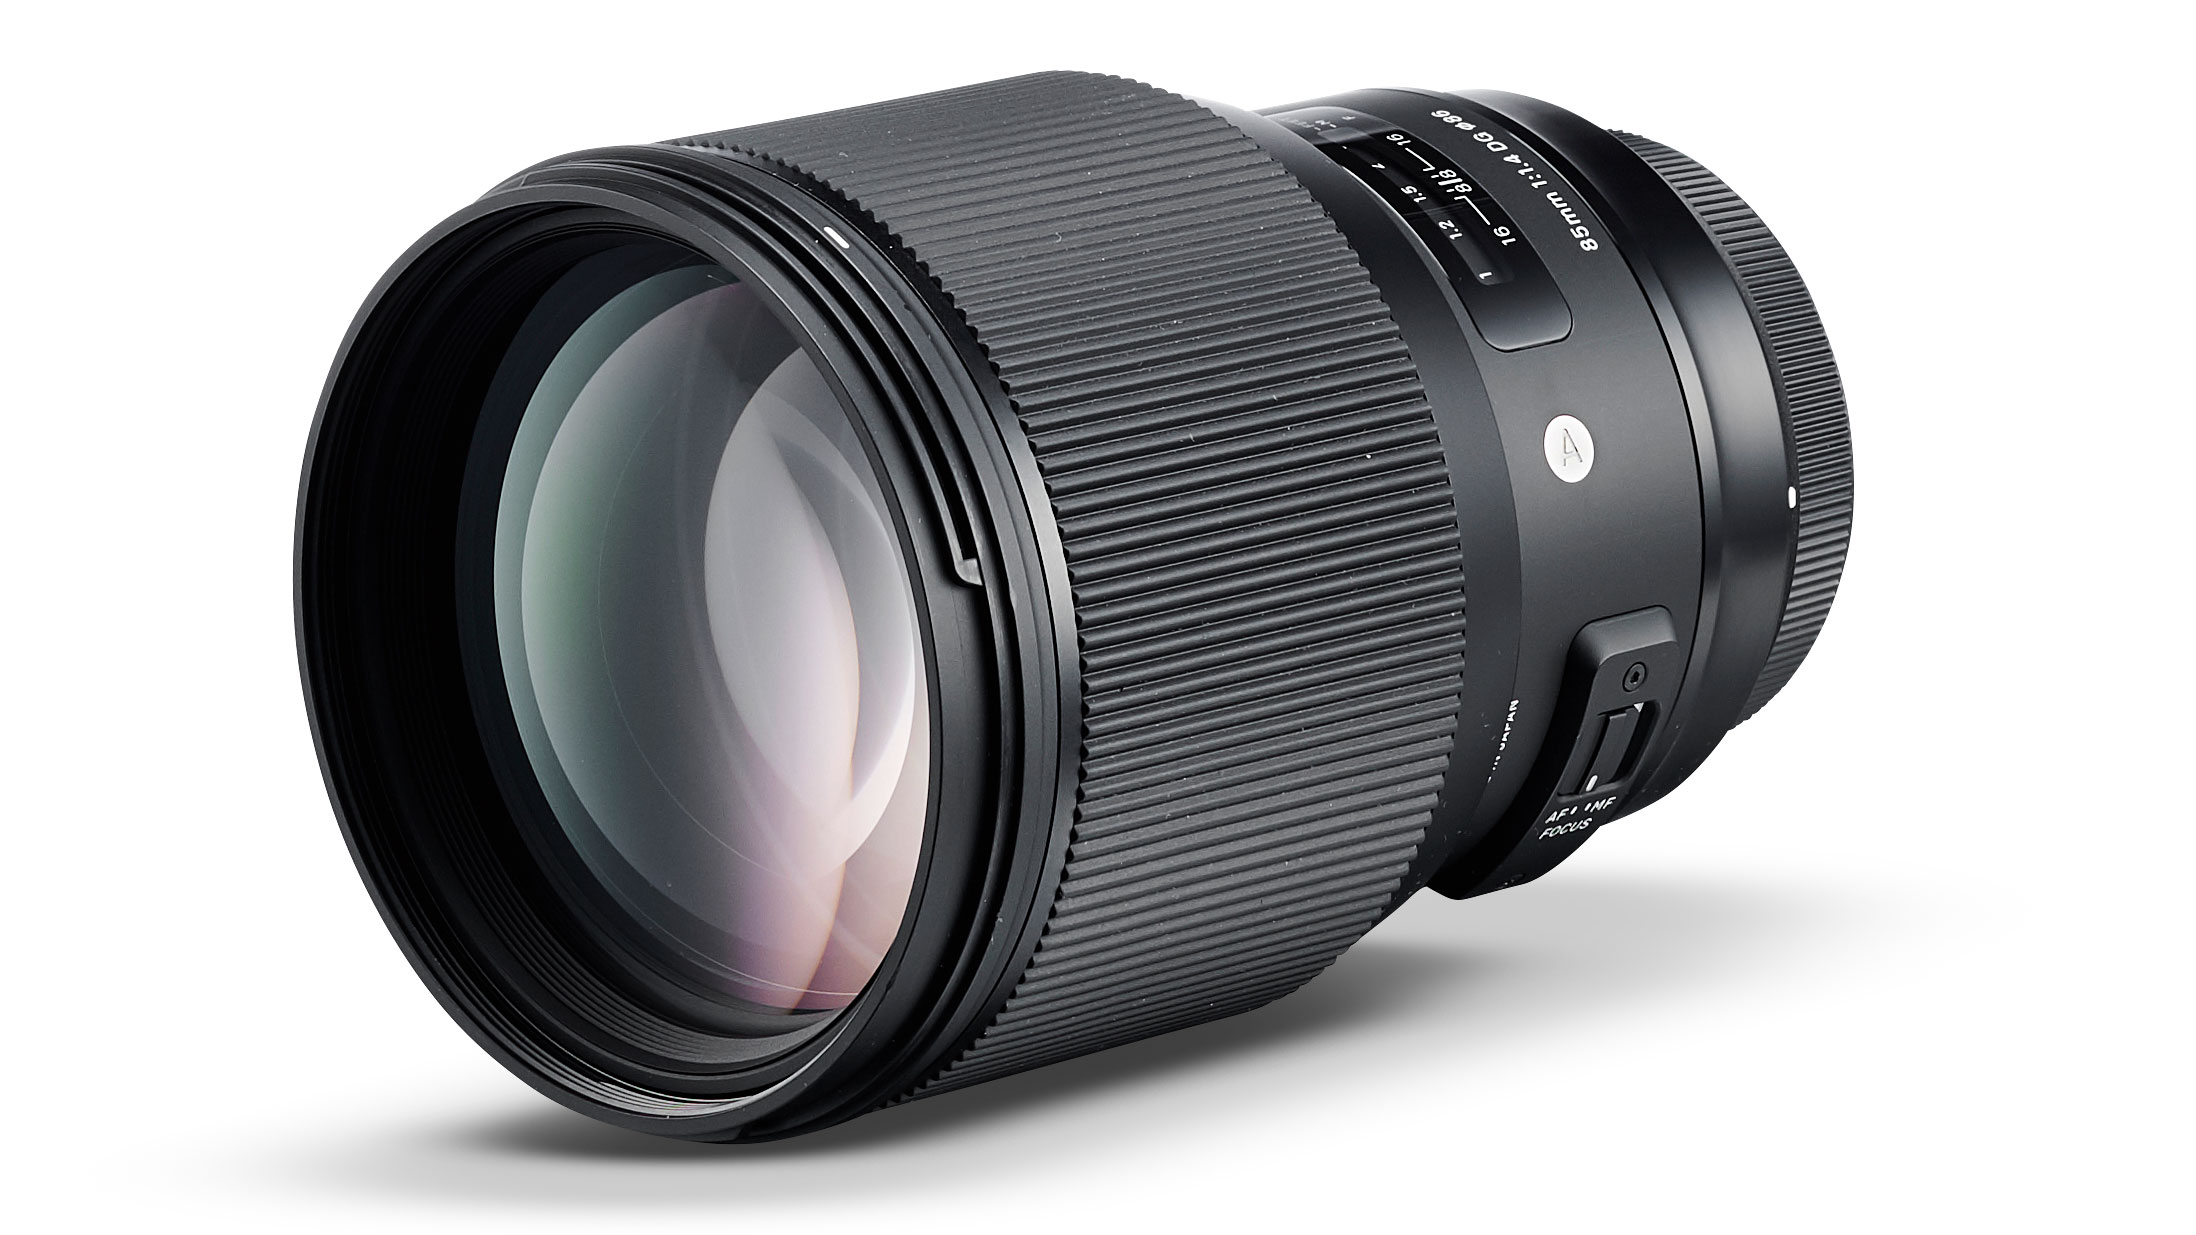 Best Sony lenses: Sigma 85mm f/1.4 DG HSM Art